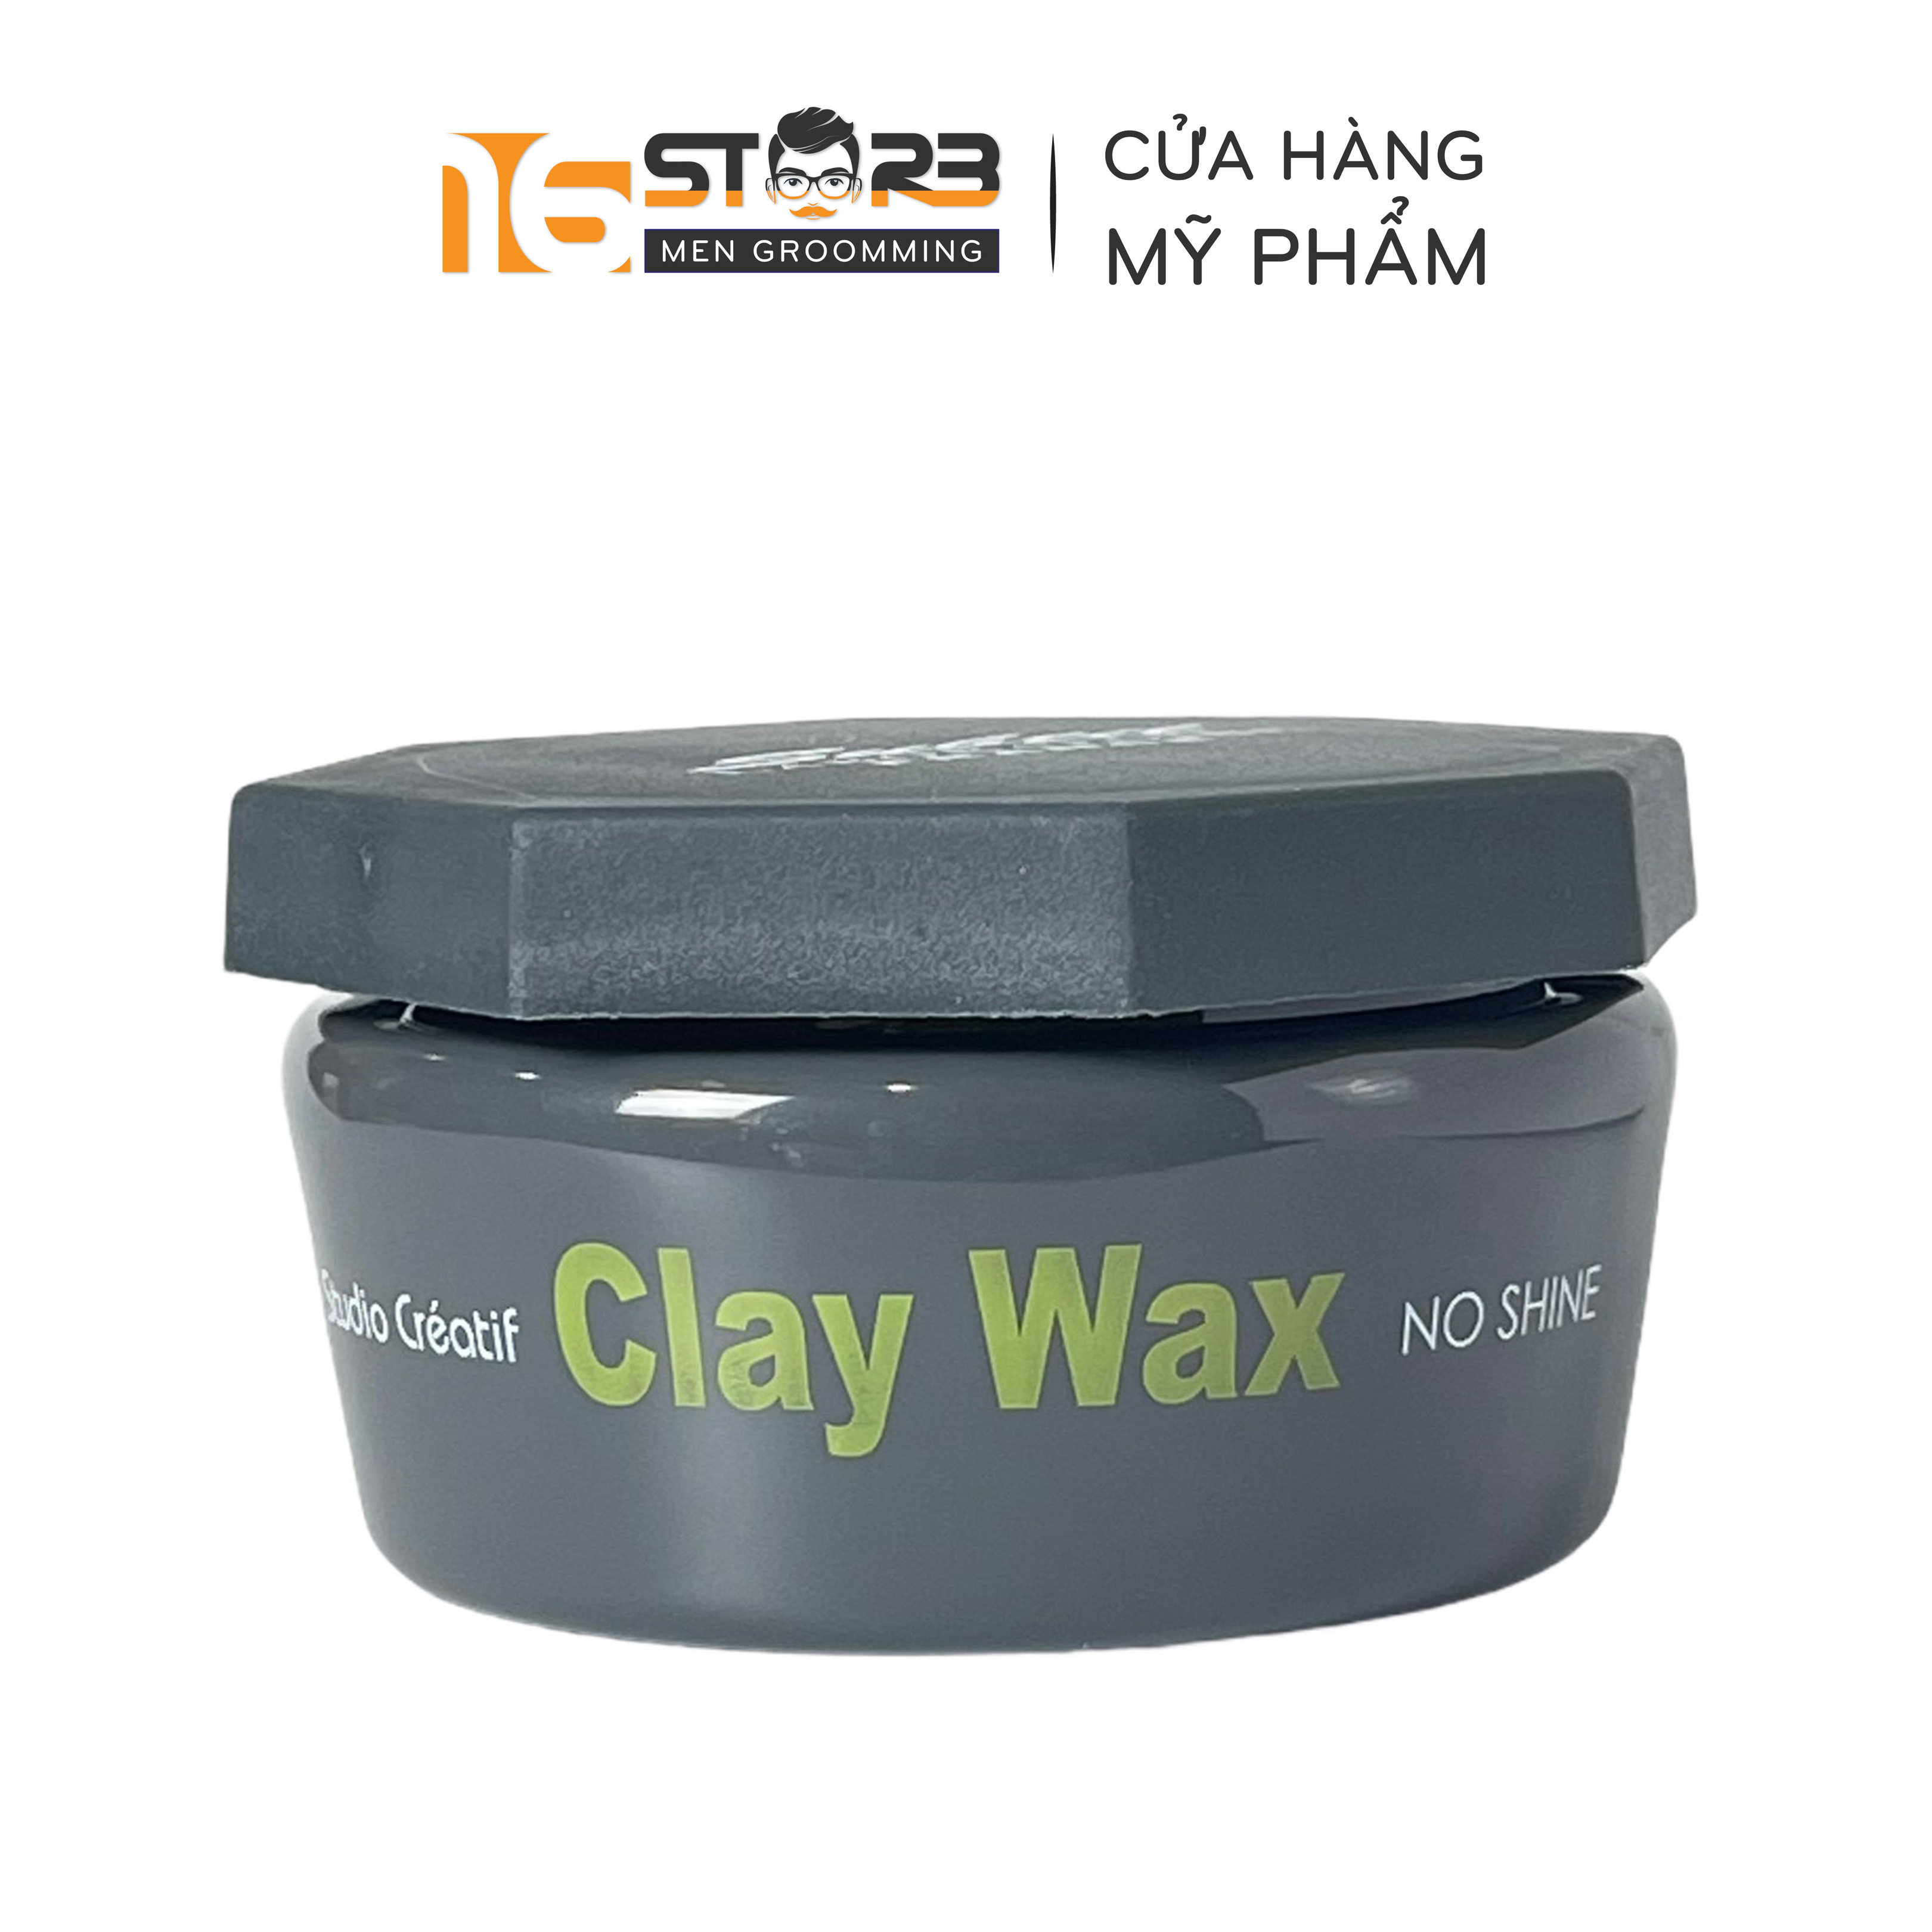 Sáp Wax Sáp vuốt tóc nam CLAY WAX TRẮNG Profession 100gr tạo kiểu giữ nếp  cho tóc  Tạo kiểu tóc  TheFaceHoliccom